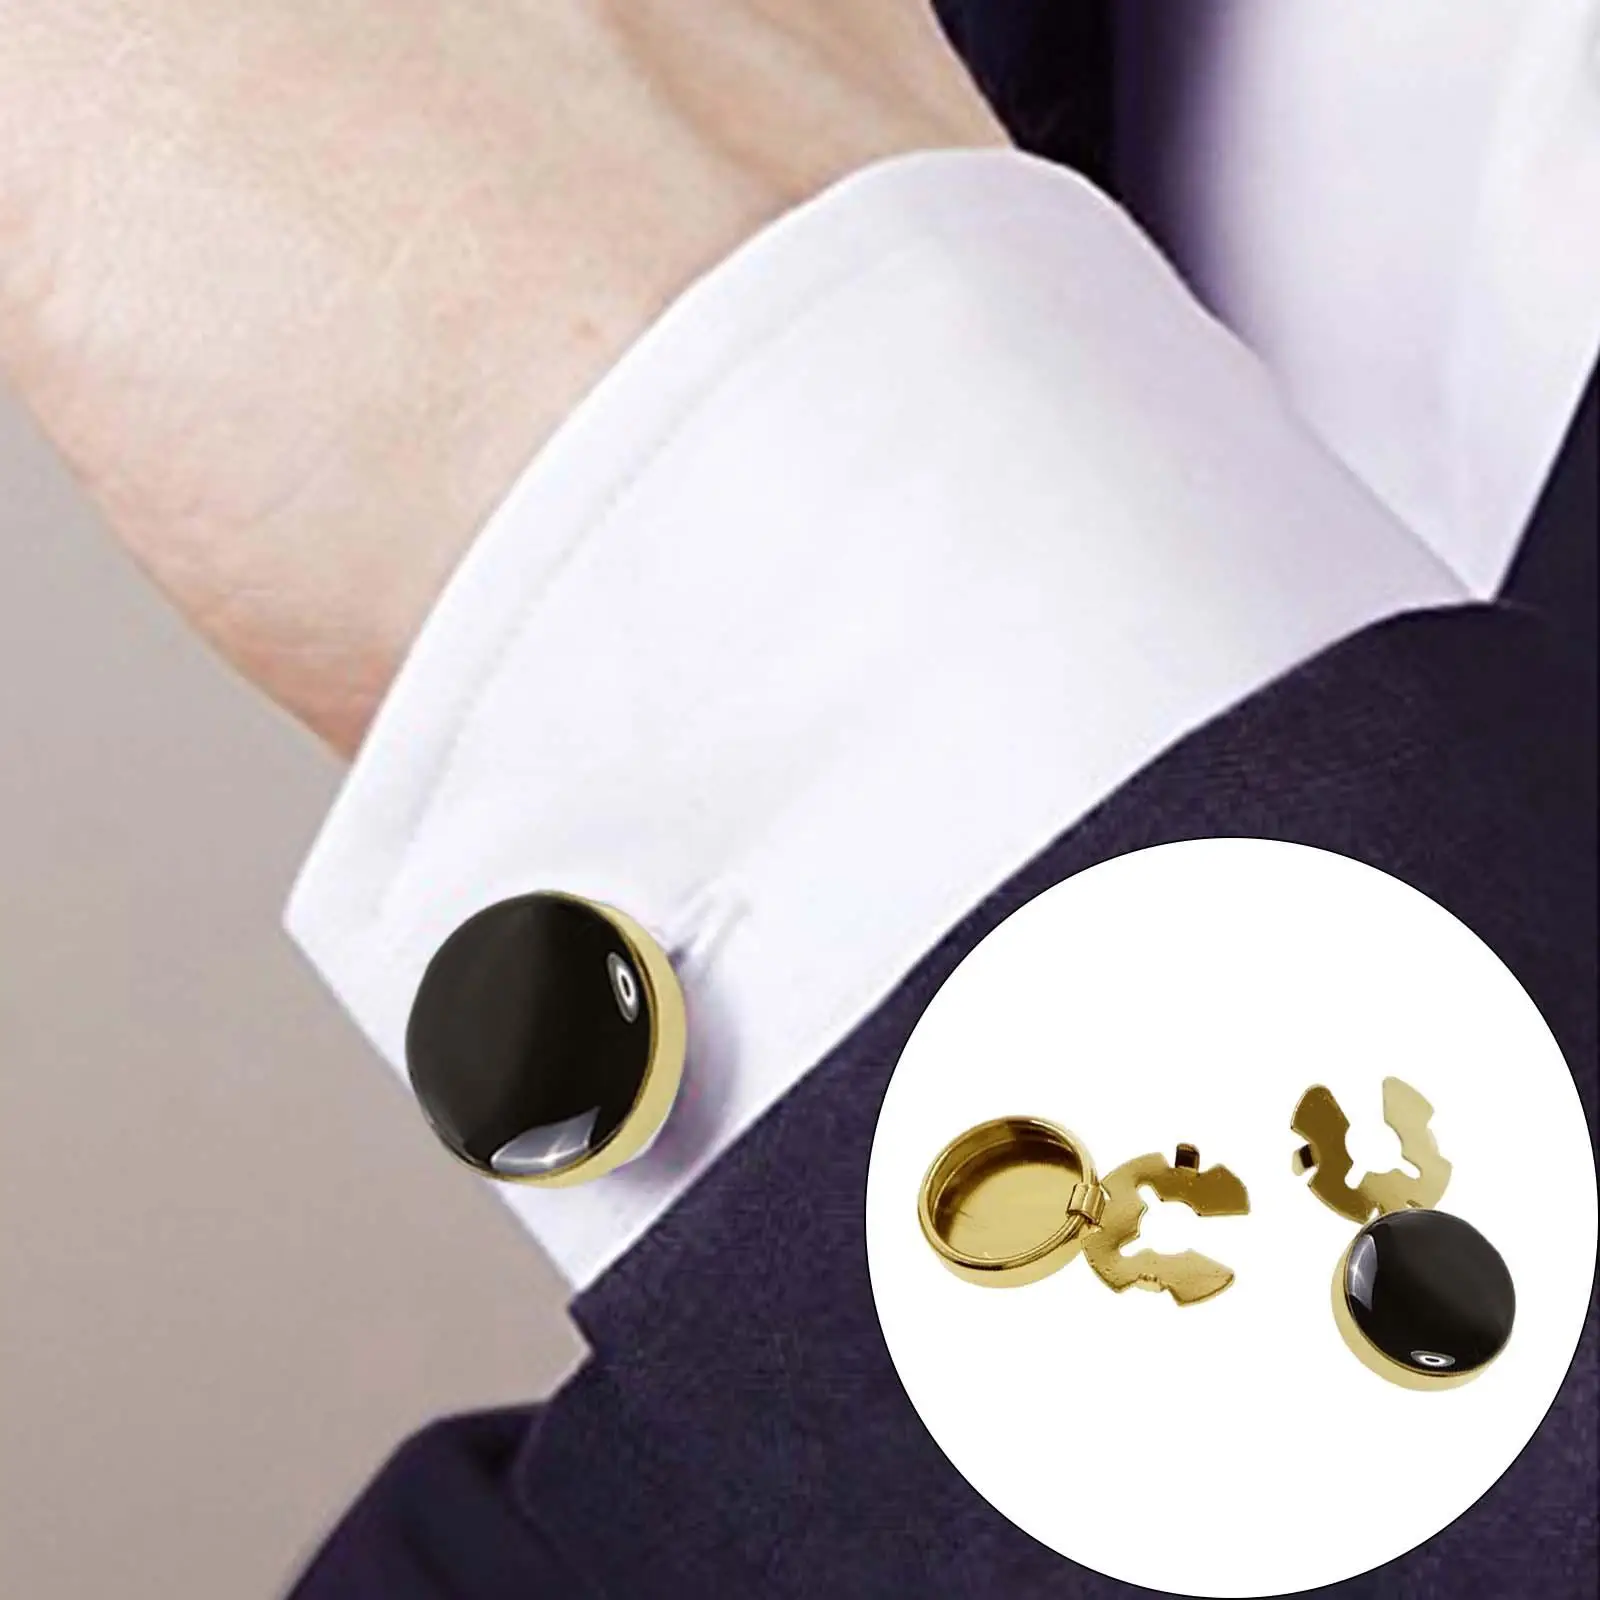 2 Pieces Men Cufflinks Suit Decors Formal Event Button Covers Men Gift